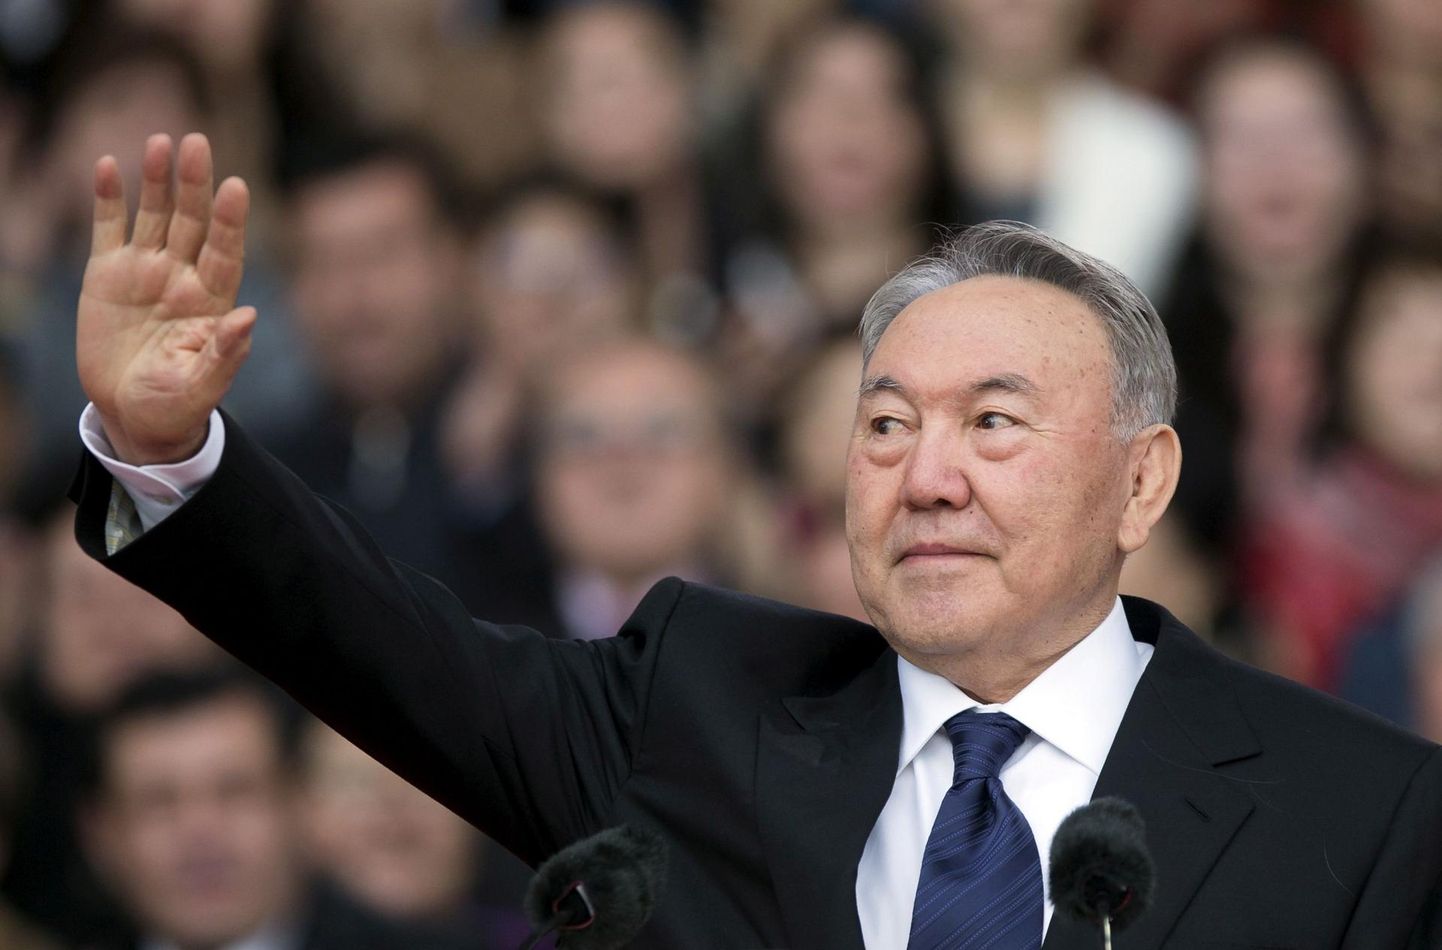 Jelbasõ´ks ehk riigi juhiks kutsutud Nursultan Nazarbajev võis õigeaegselt ametist loobudes ennast hea strateegina näidata. 